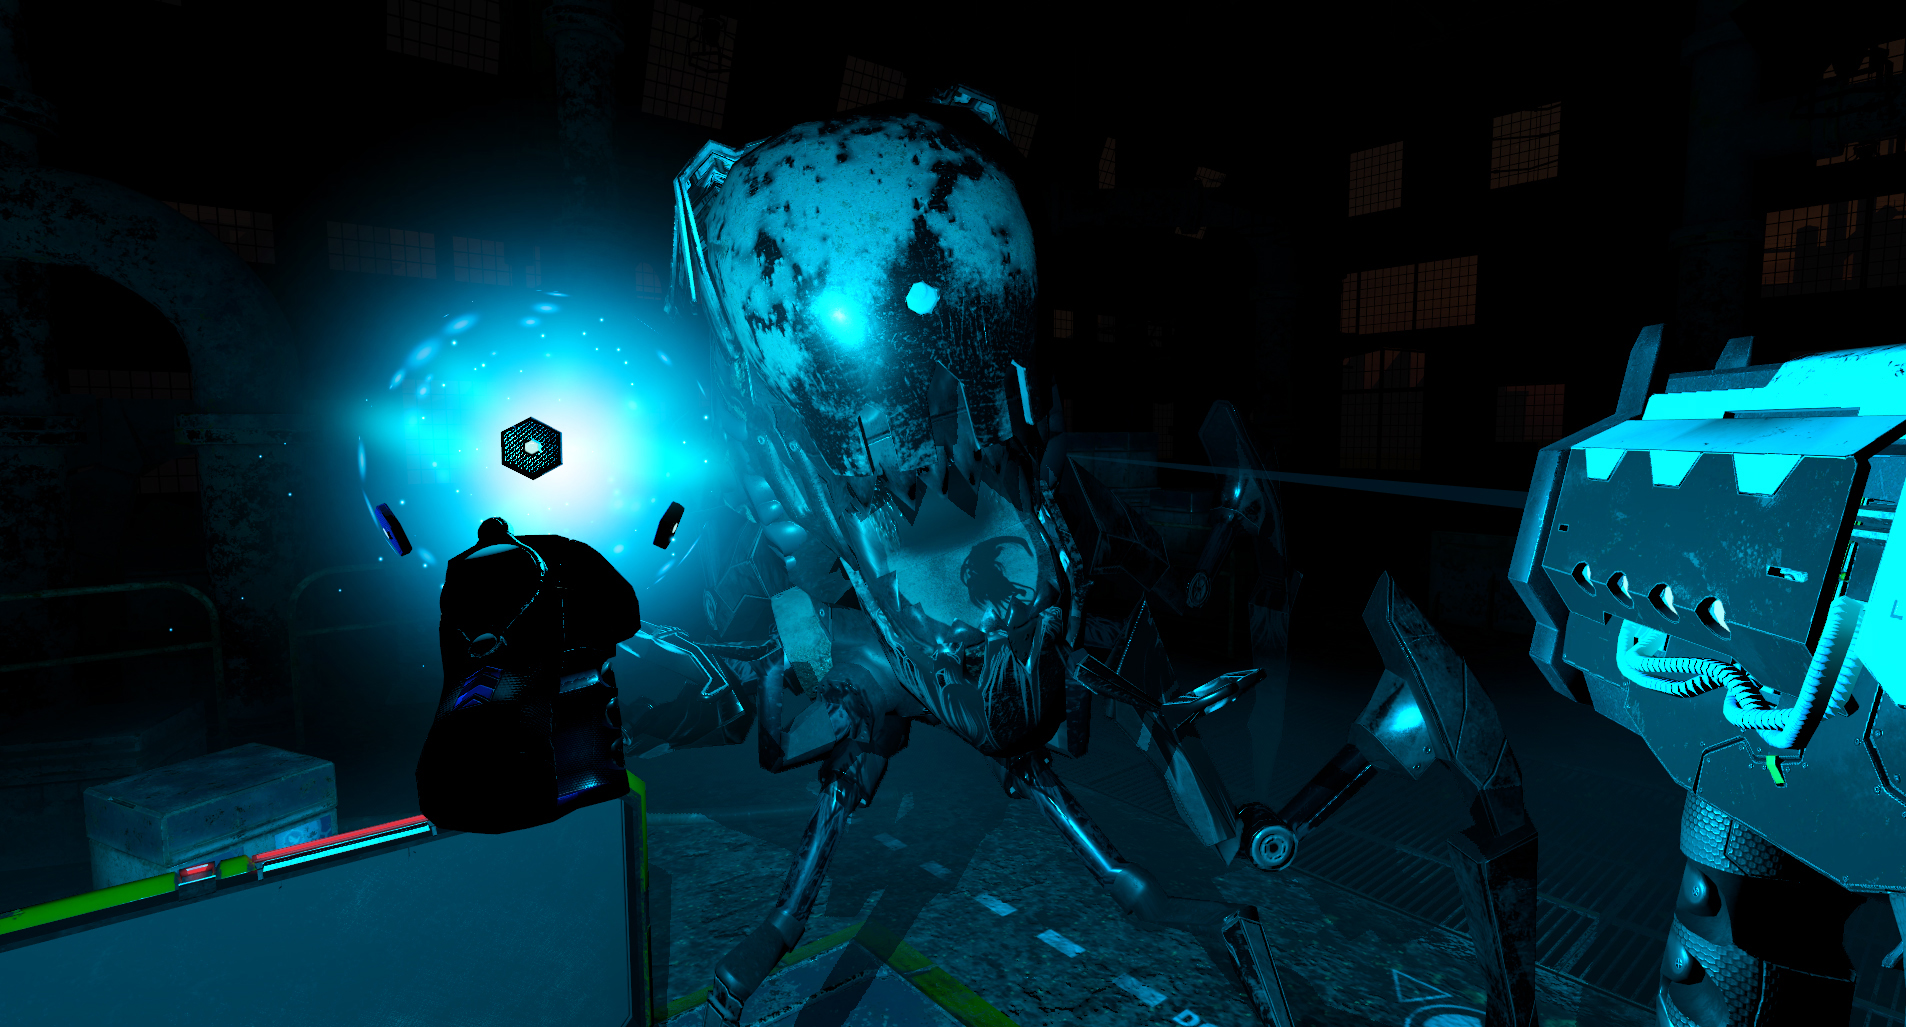 Blue Effect VR screenshot